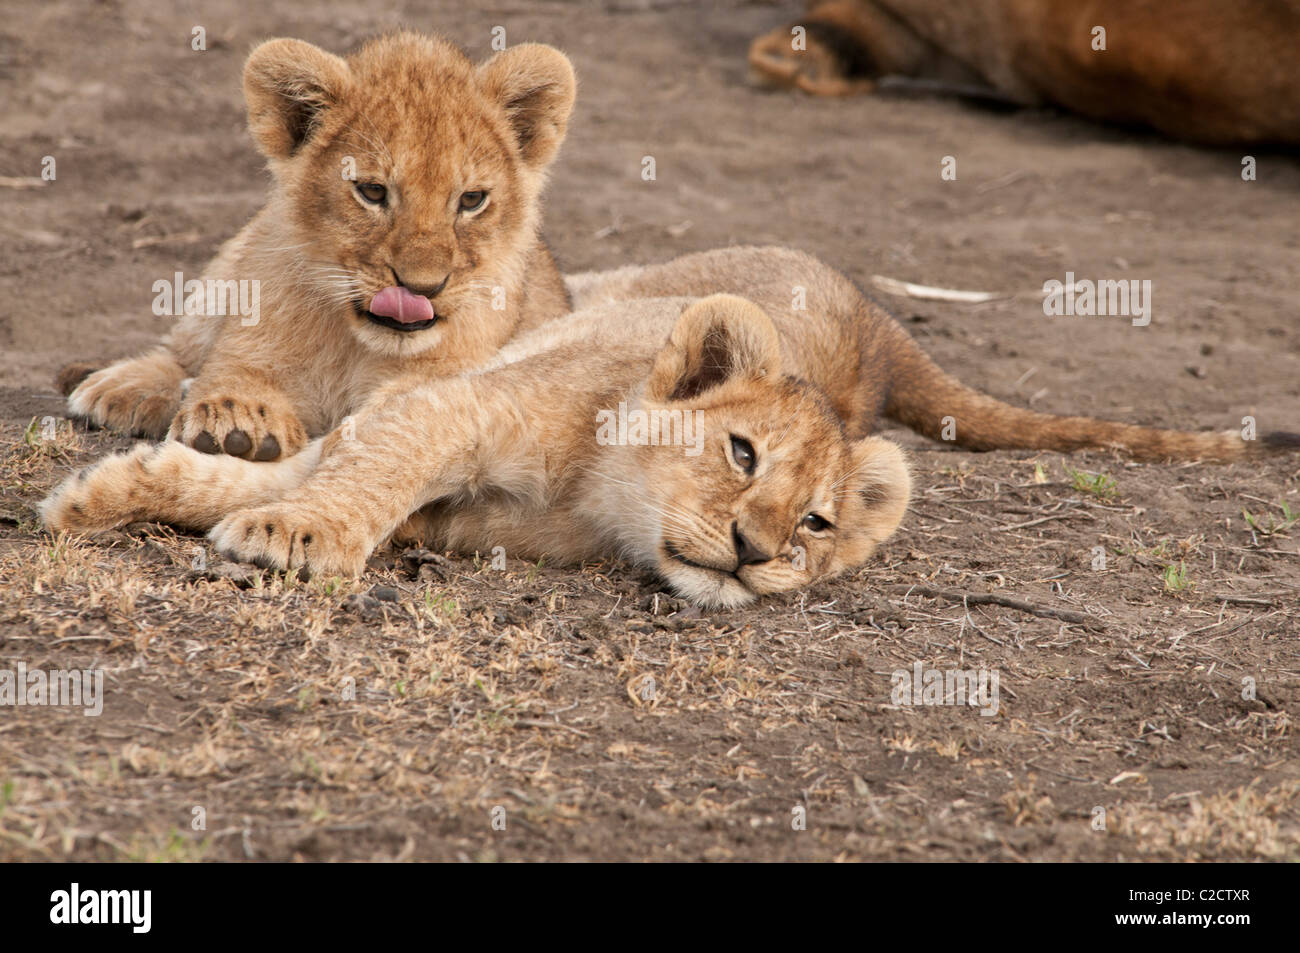 Fotos de dos cachorros de león tomar un descanso de jugar. Foto de stock